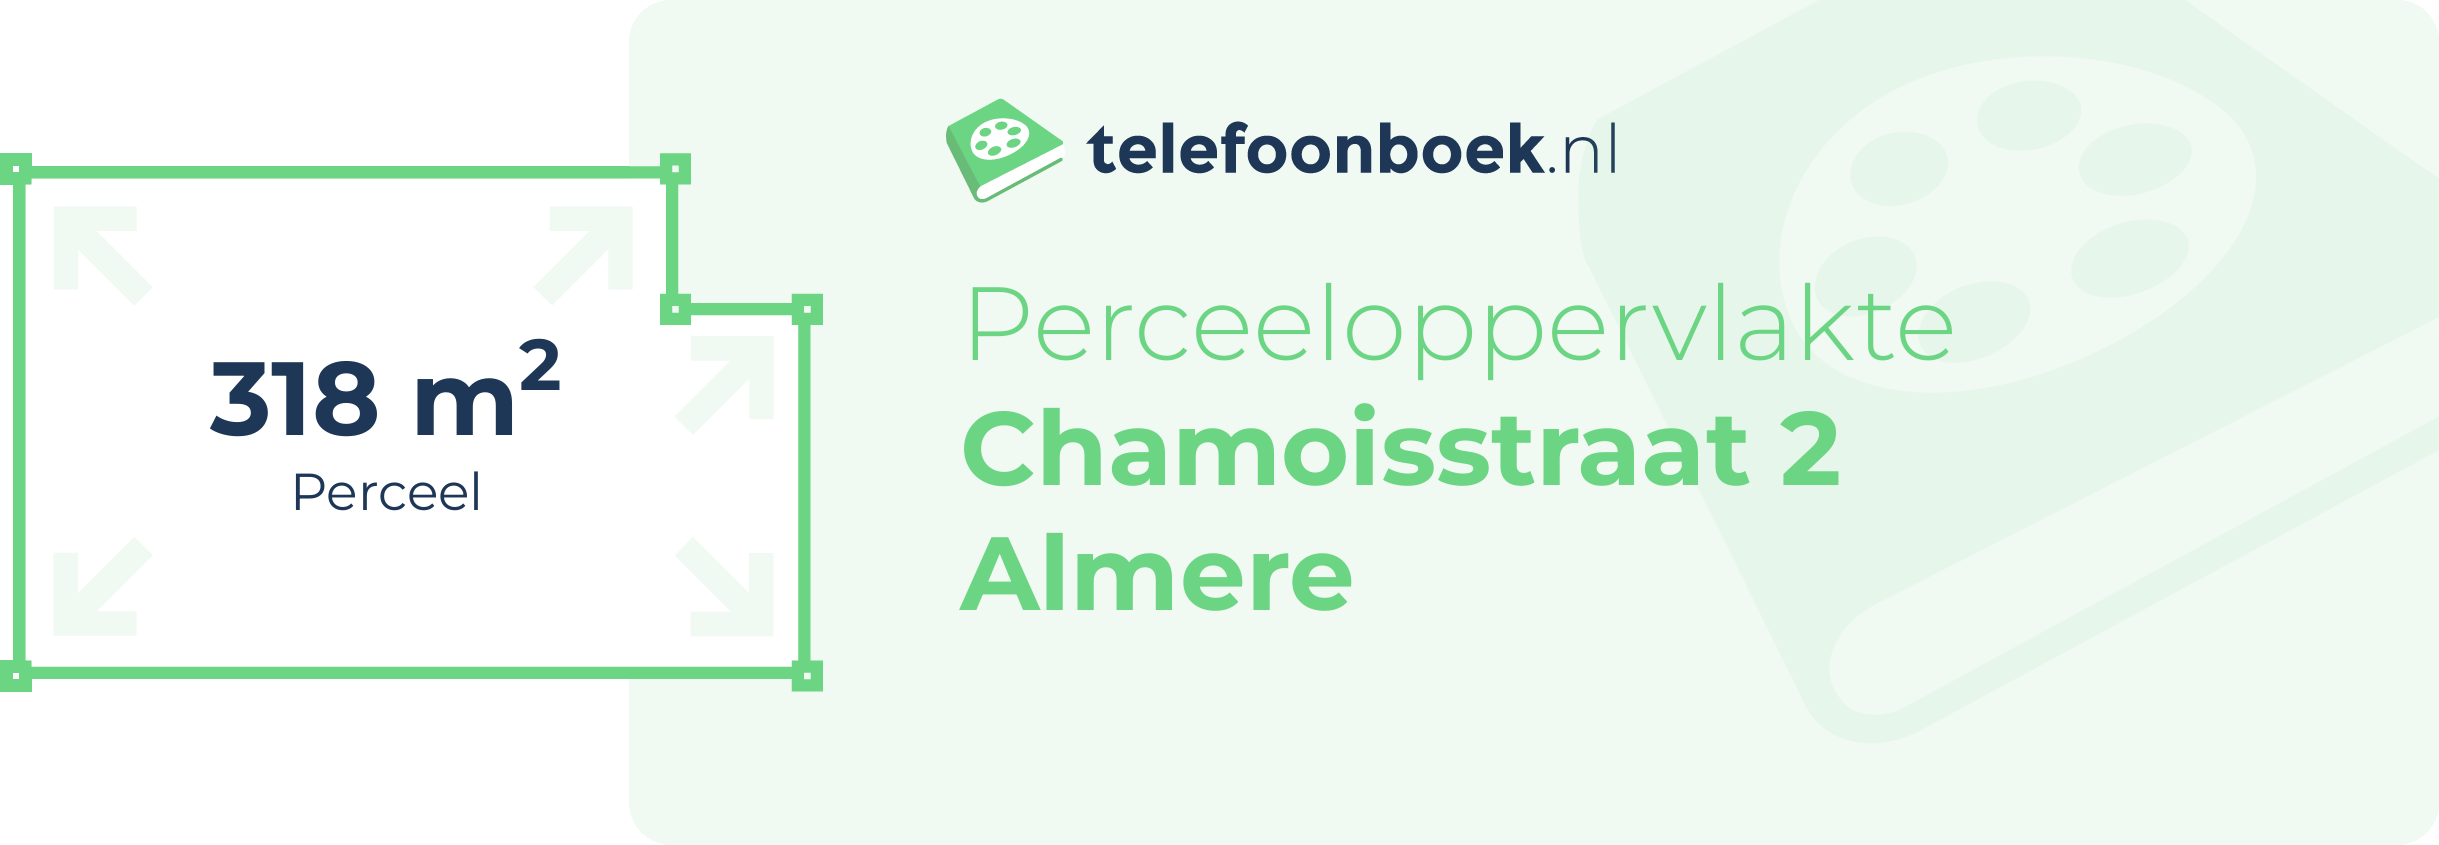 Perceeloppervlakte Chamoisstraat 2 Almere